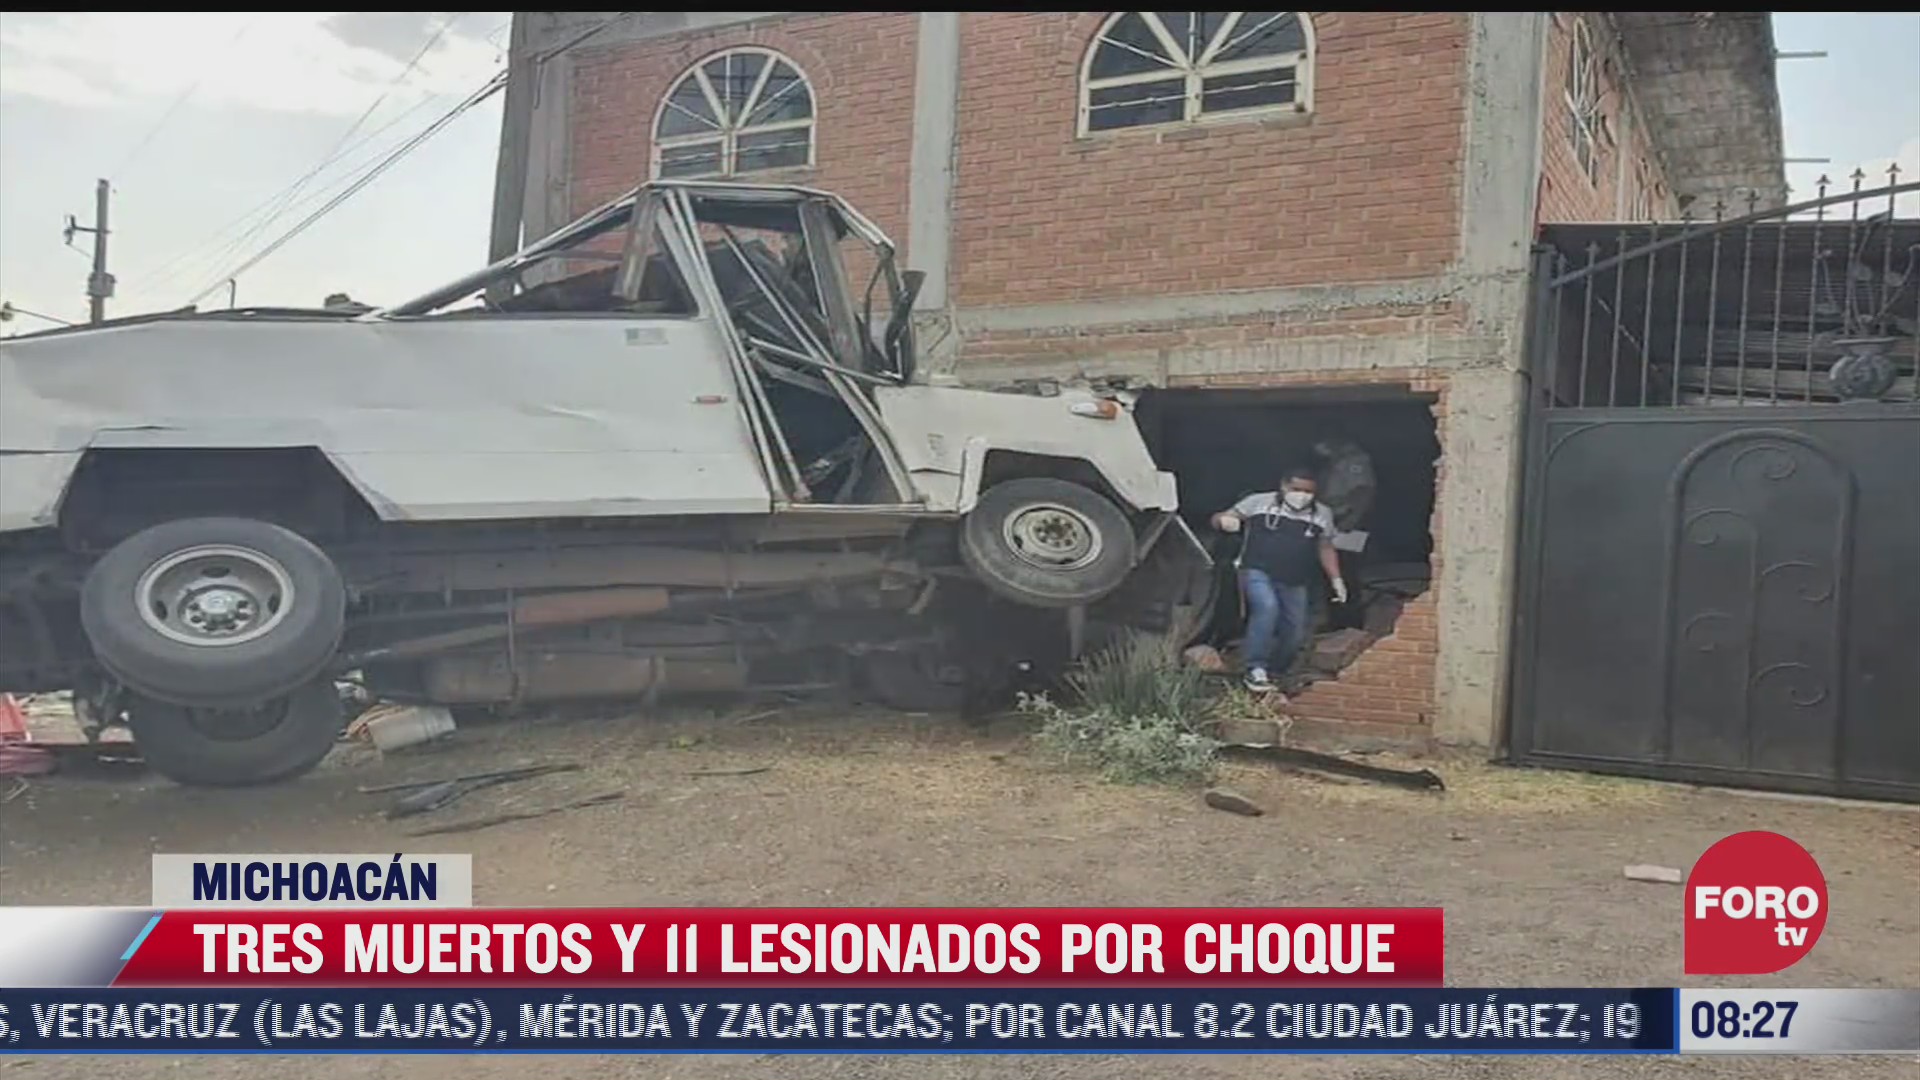 choca trailer contra camion que transportaba jornaleros en michoacan hay tres muertos